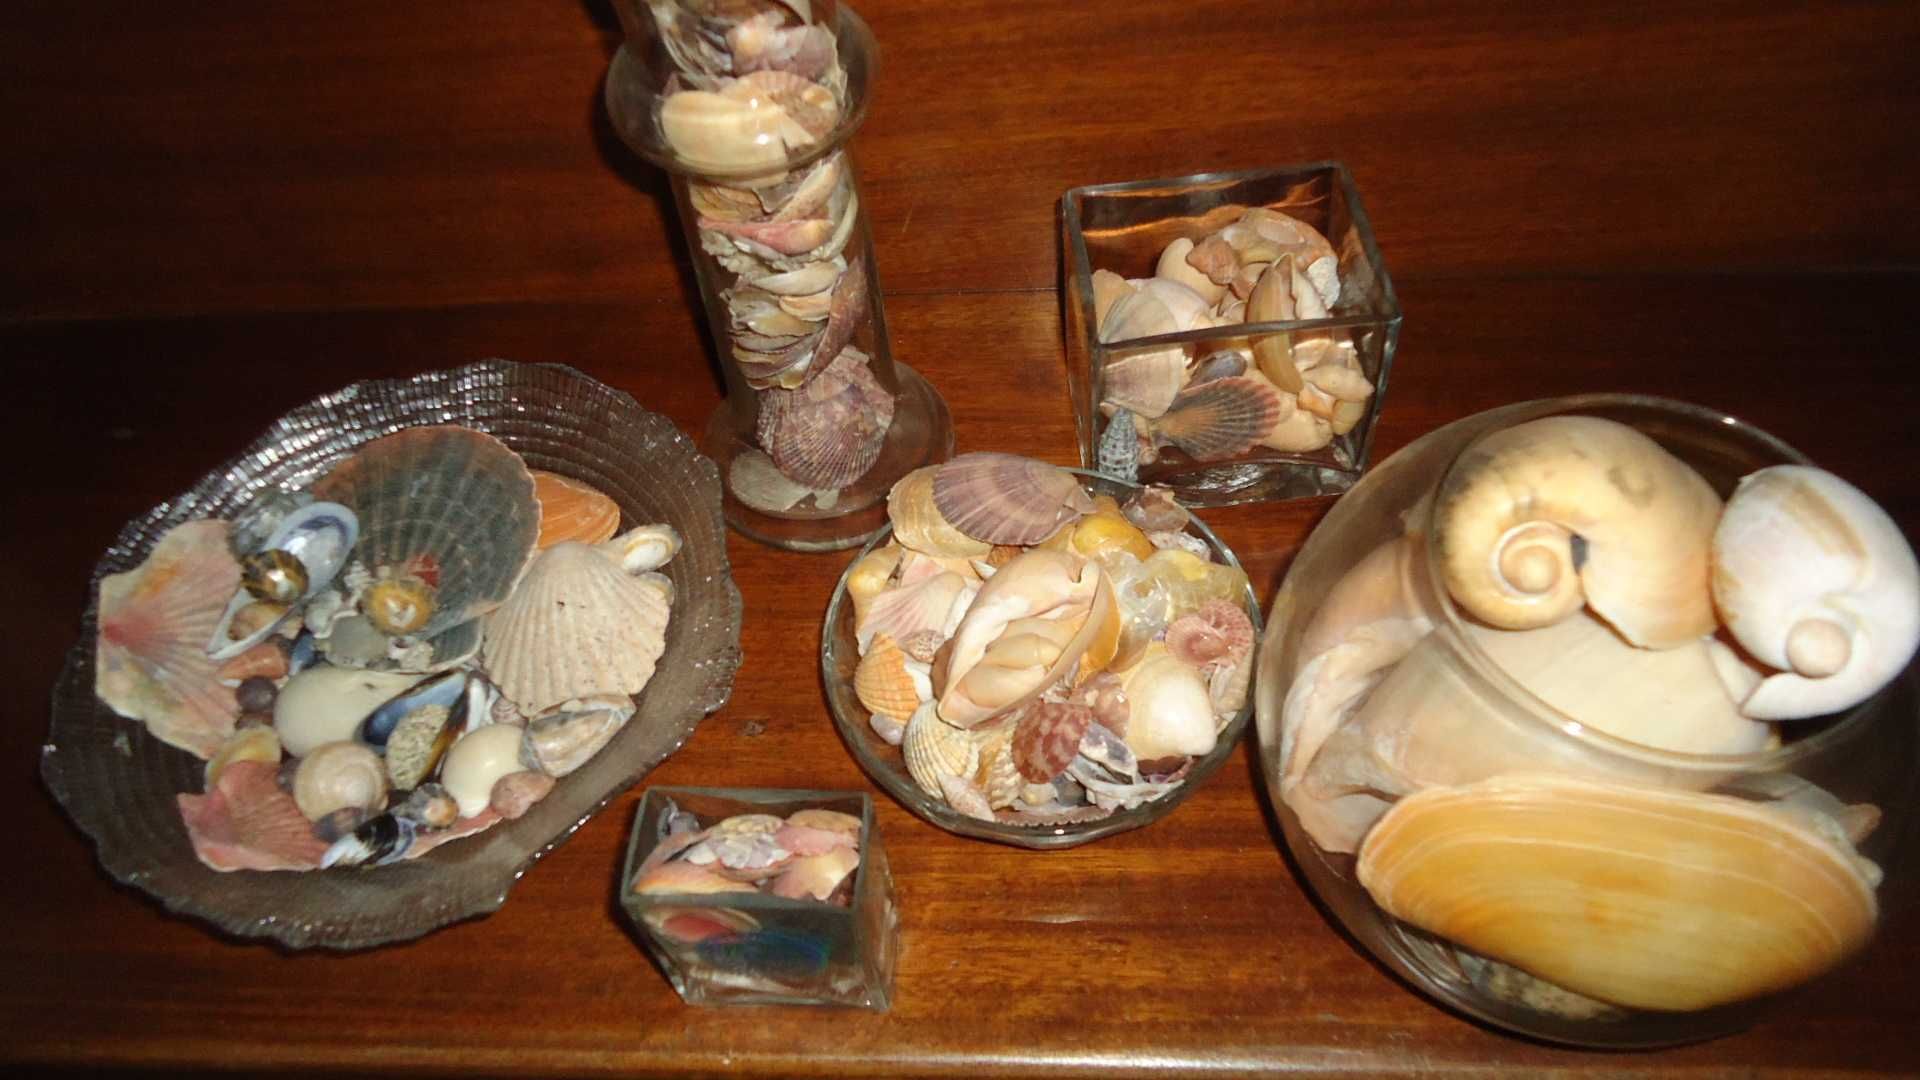 Arranjos com conchas em jarras ou taças de vidro